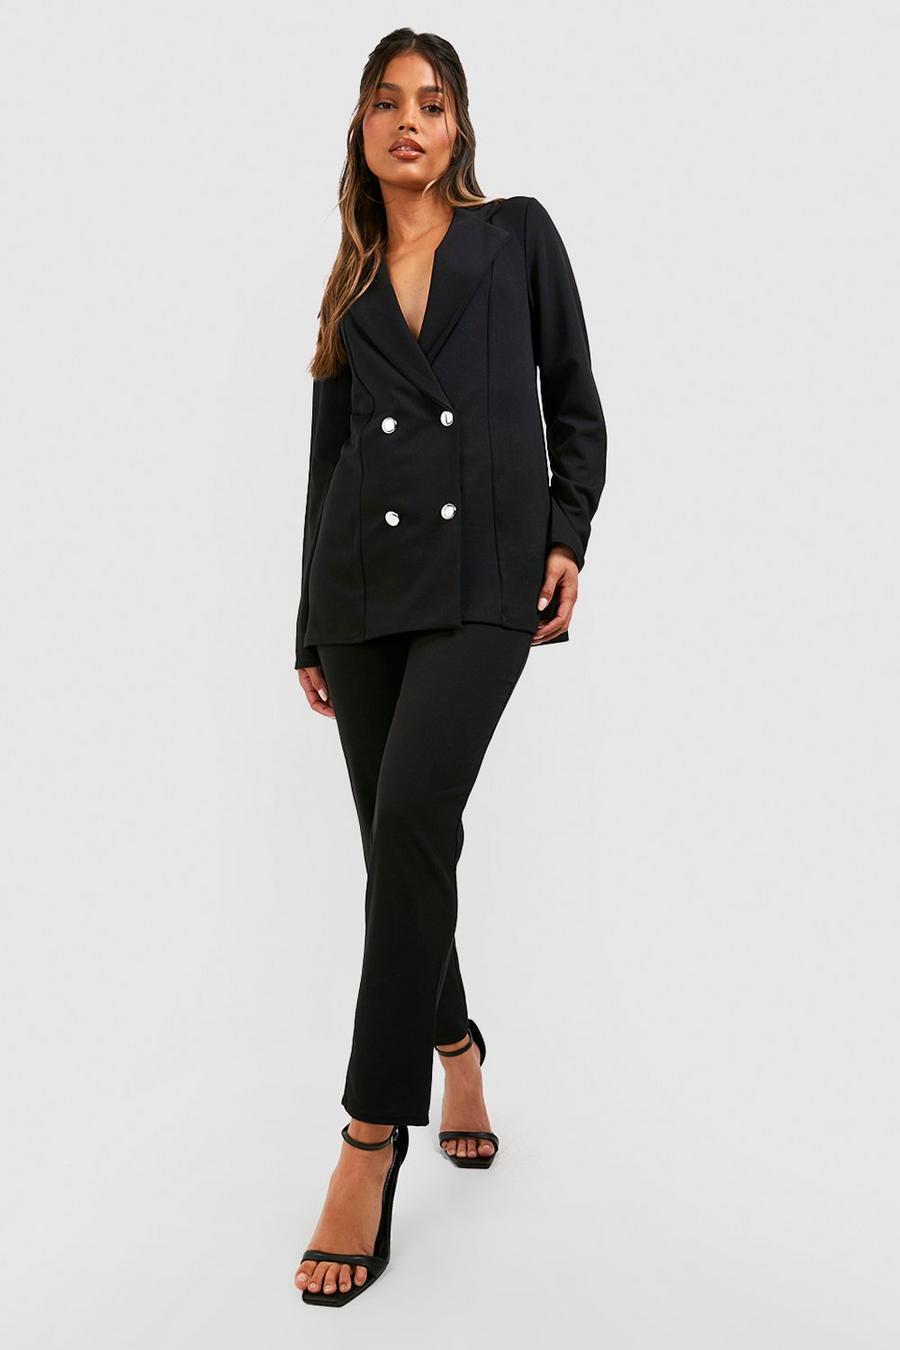 Women's Suit Sets & Tailoring - Blazer Sets, Suit Seperates - Lulus